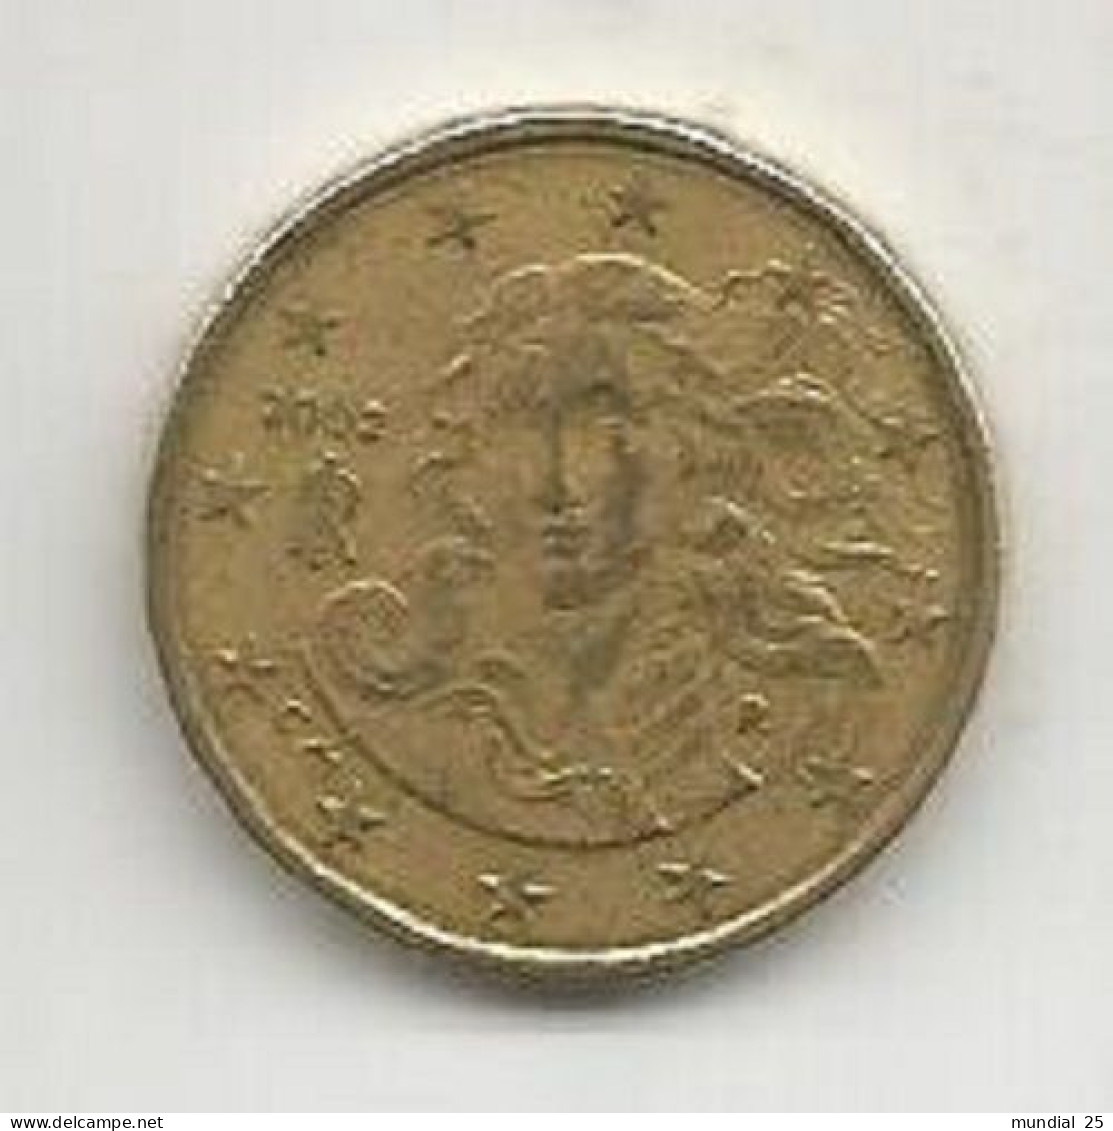 ITALY 10 EURO CENT 2002 (R) - Italy